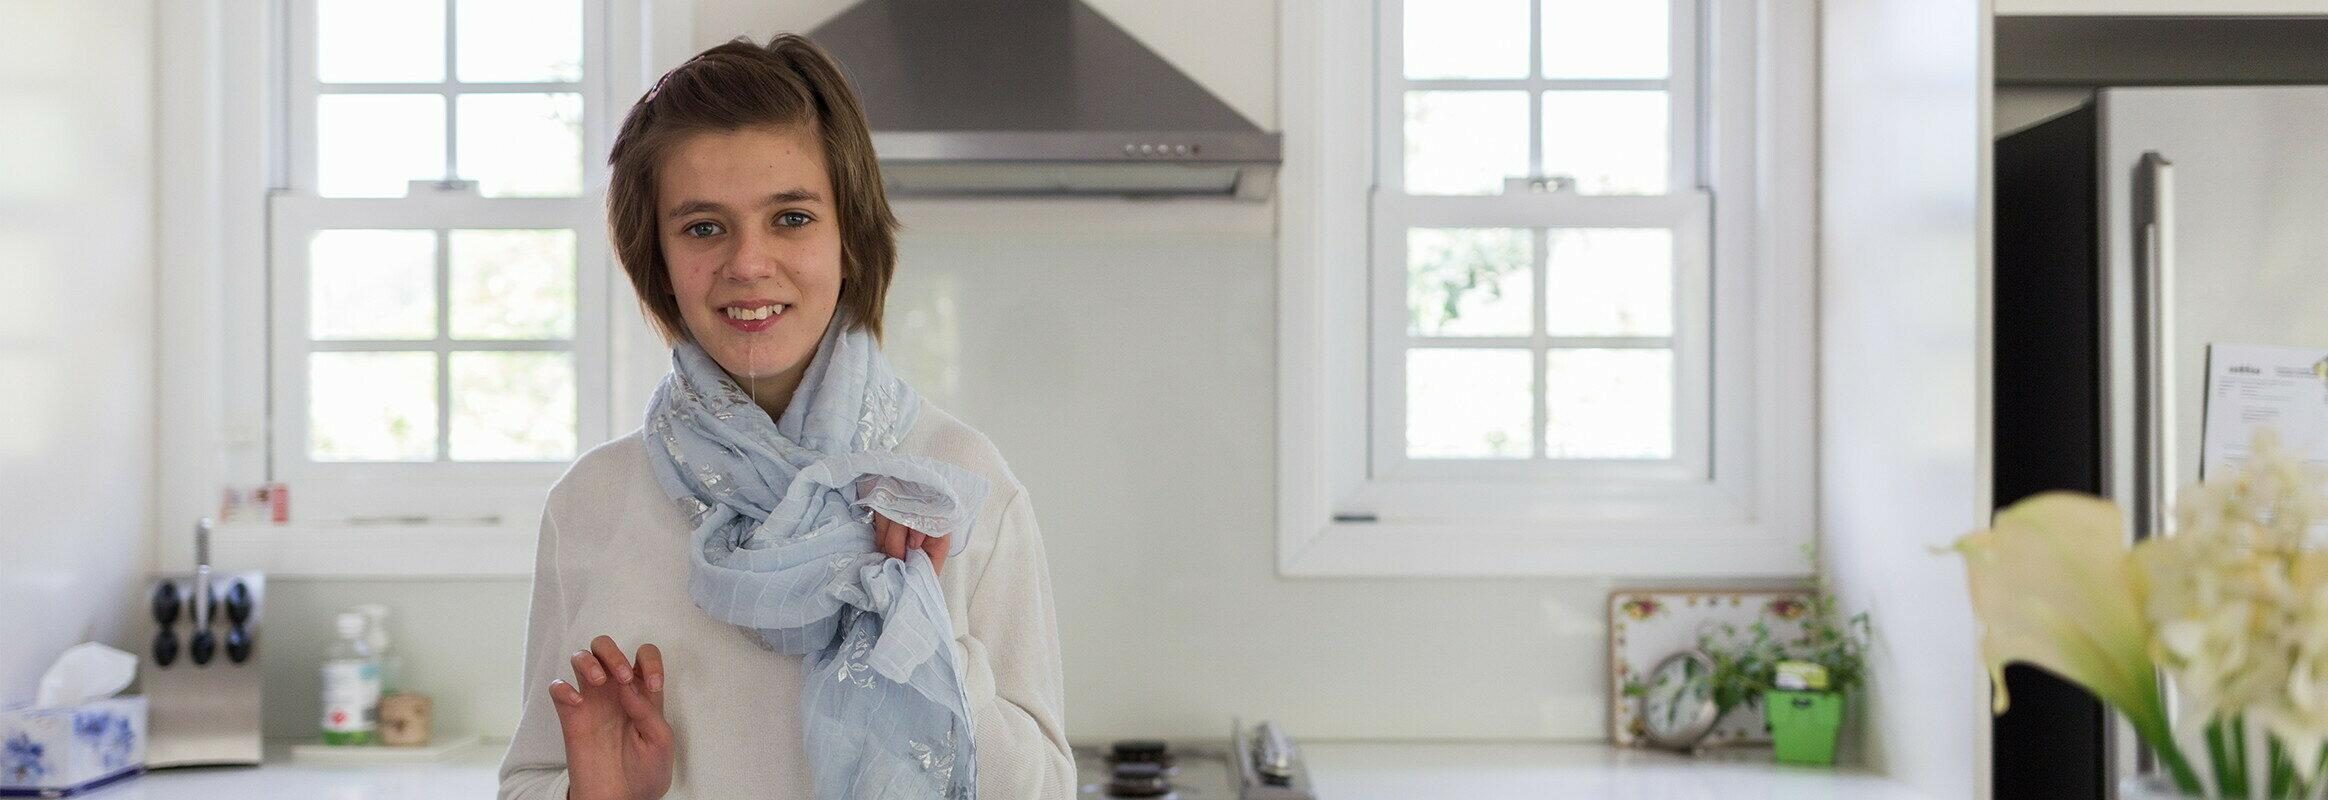 Lara, une jeune femme blanche debout dans une cuisine lumineuse, face à la caméra et souriante